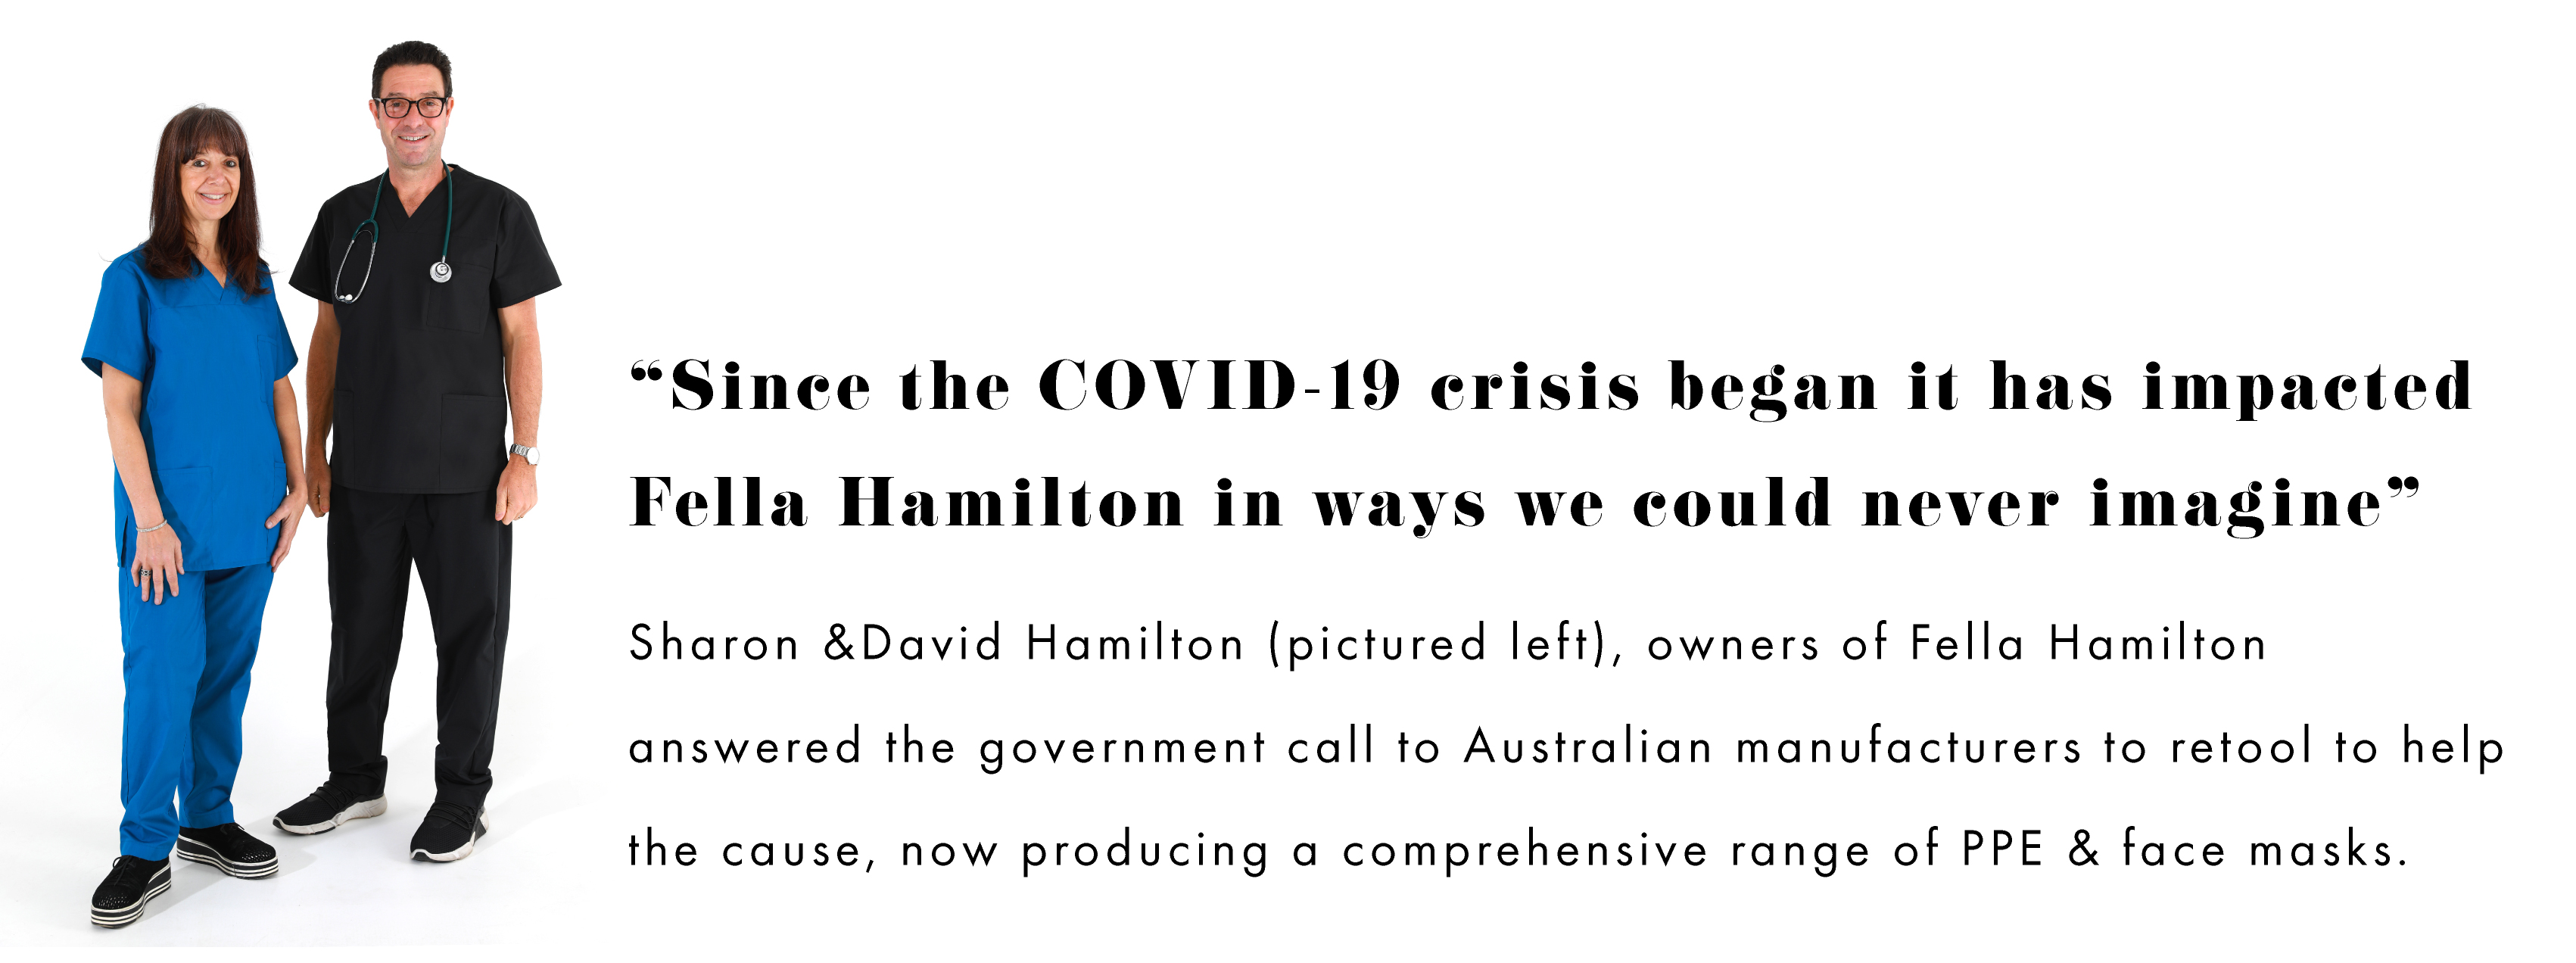 COVID-19 Changed Fella Hamilton in many ways